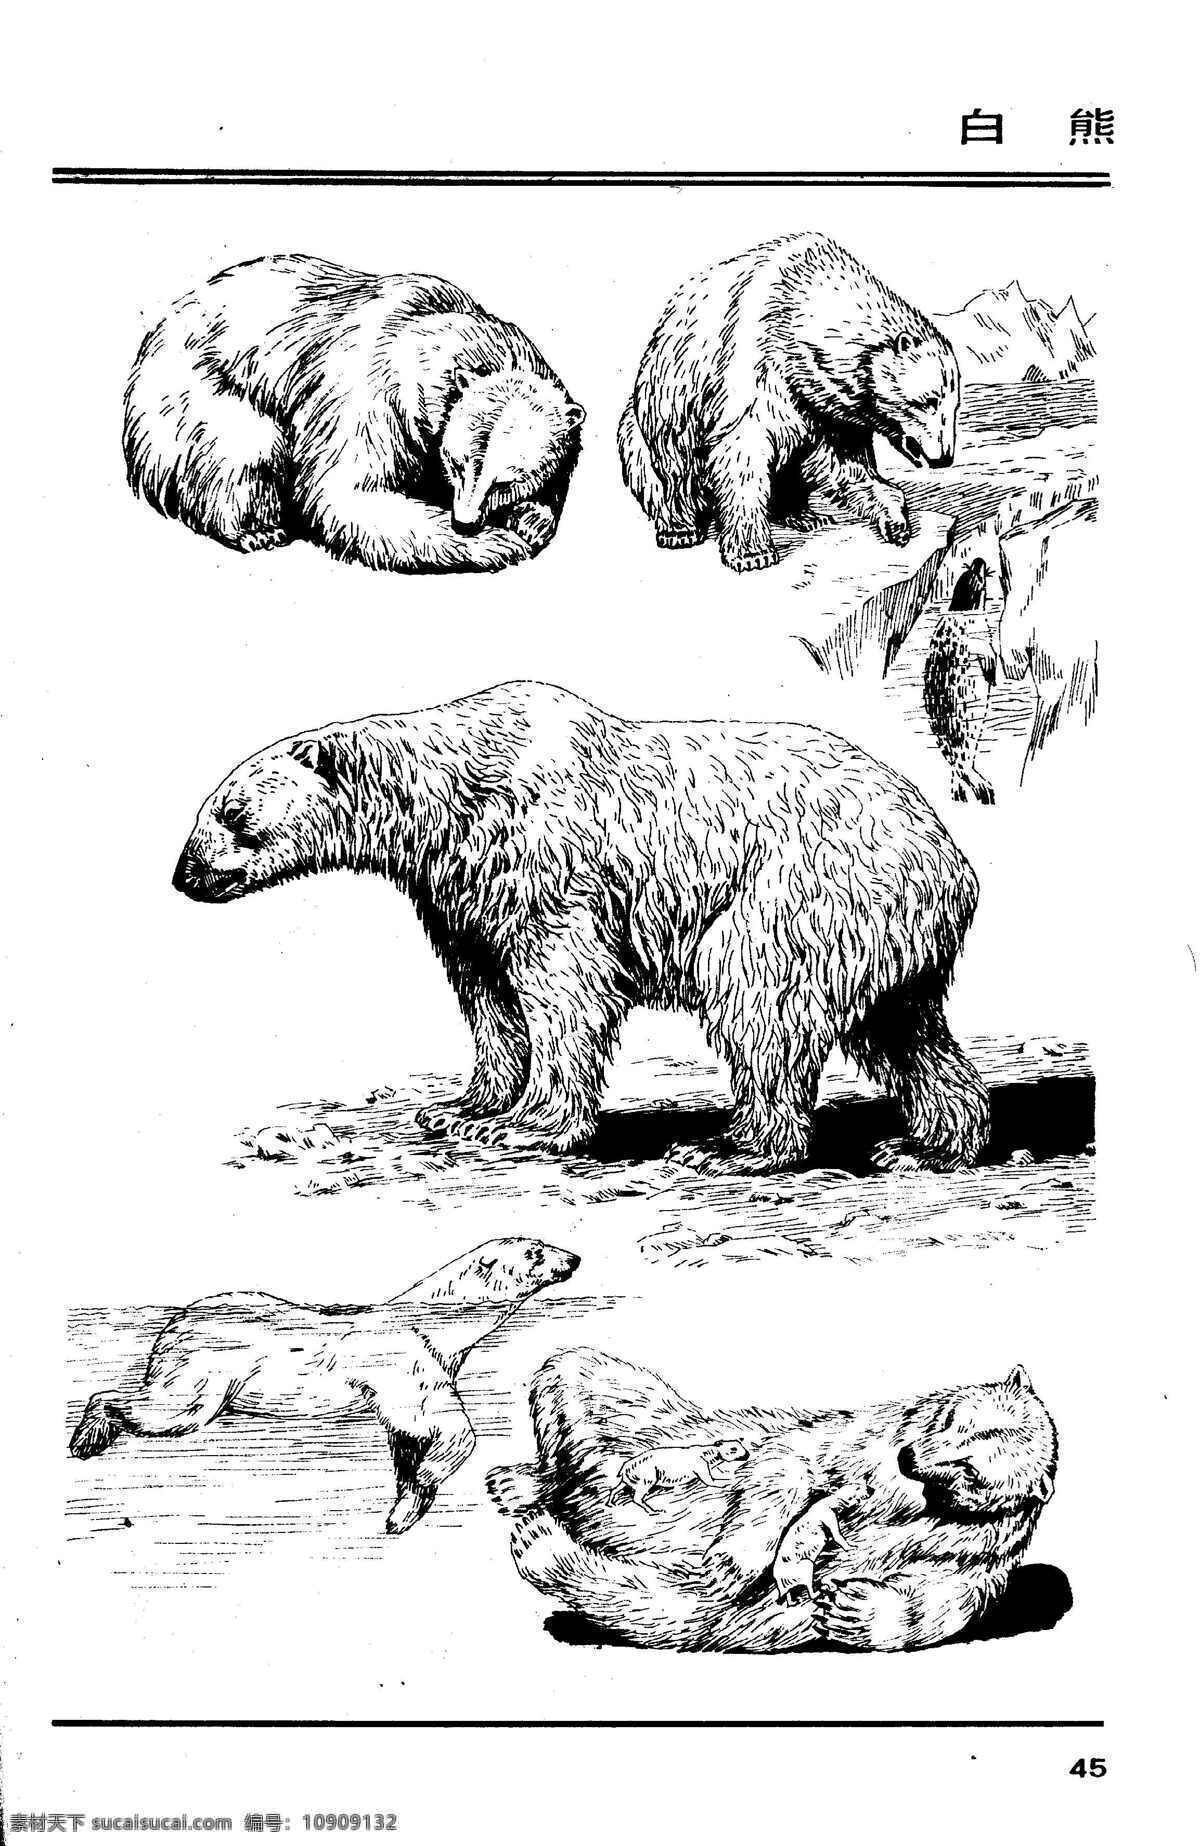 画兽谱42 白熊 百兽 兽 家禽 猛兽 动物 白描 线描 绘画 美术 禽兽 野生动物 画兽谱 北极熊 熊 生物世界 设计图库